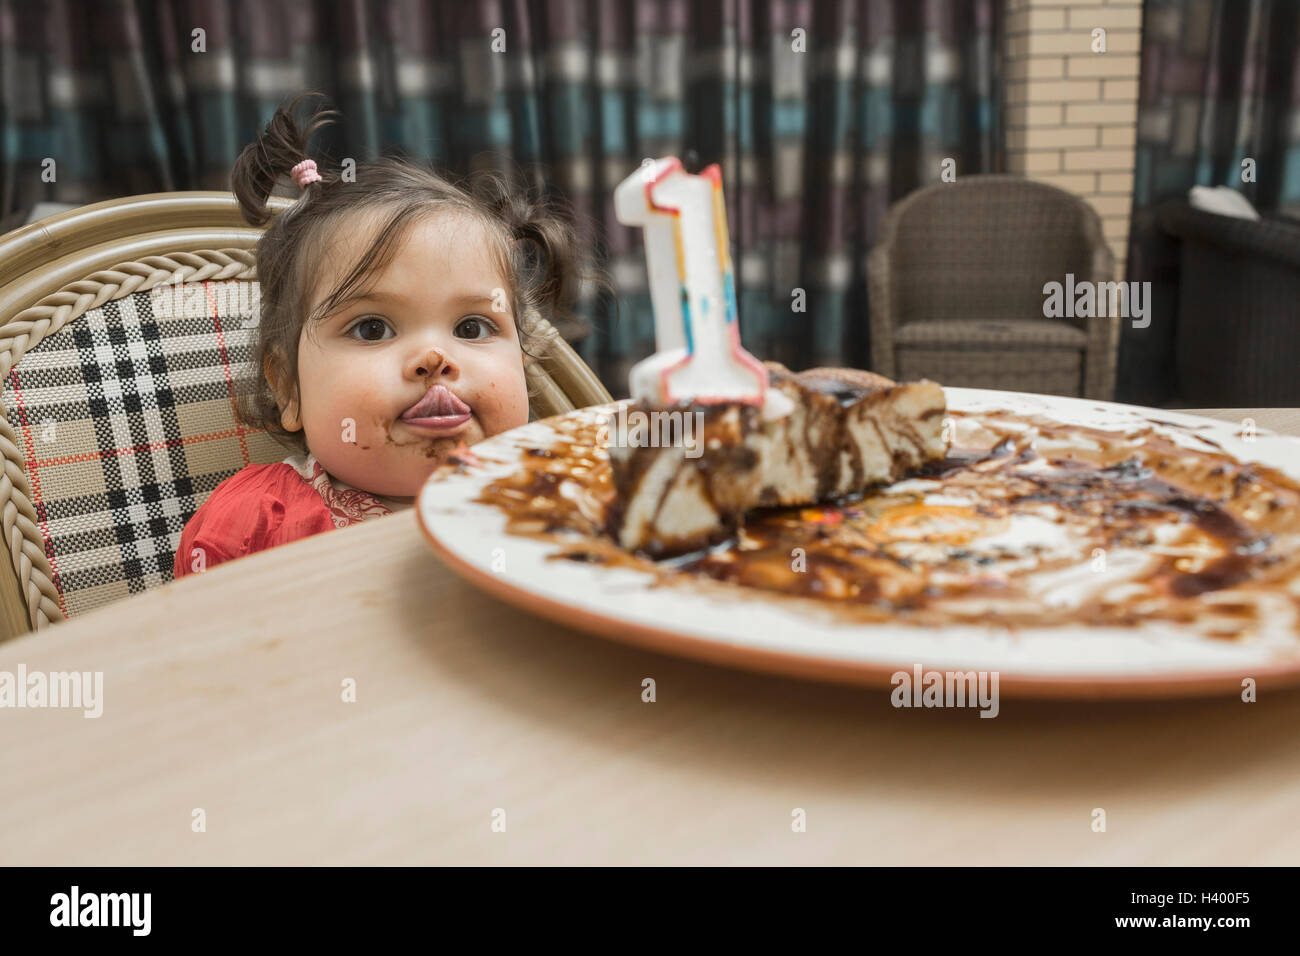 Portrait of cute girl sticking out tongue avec messy visage tout en ayant cake Banque D'Images